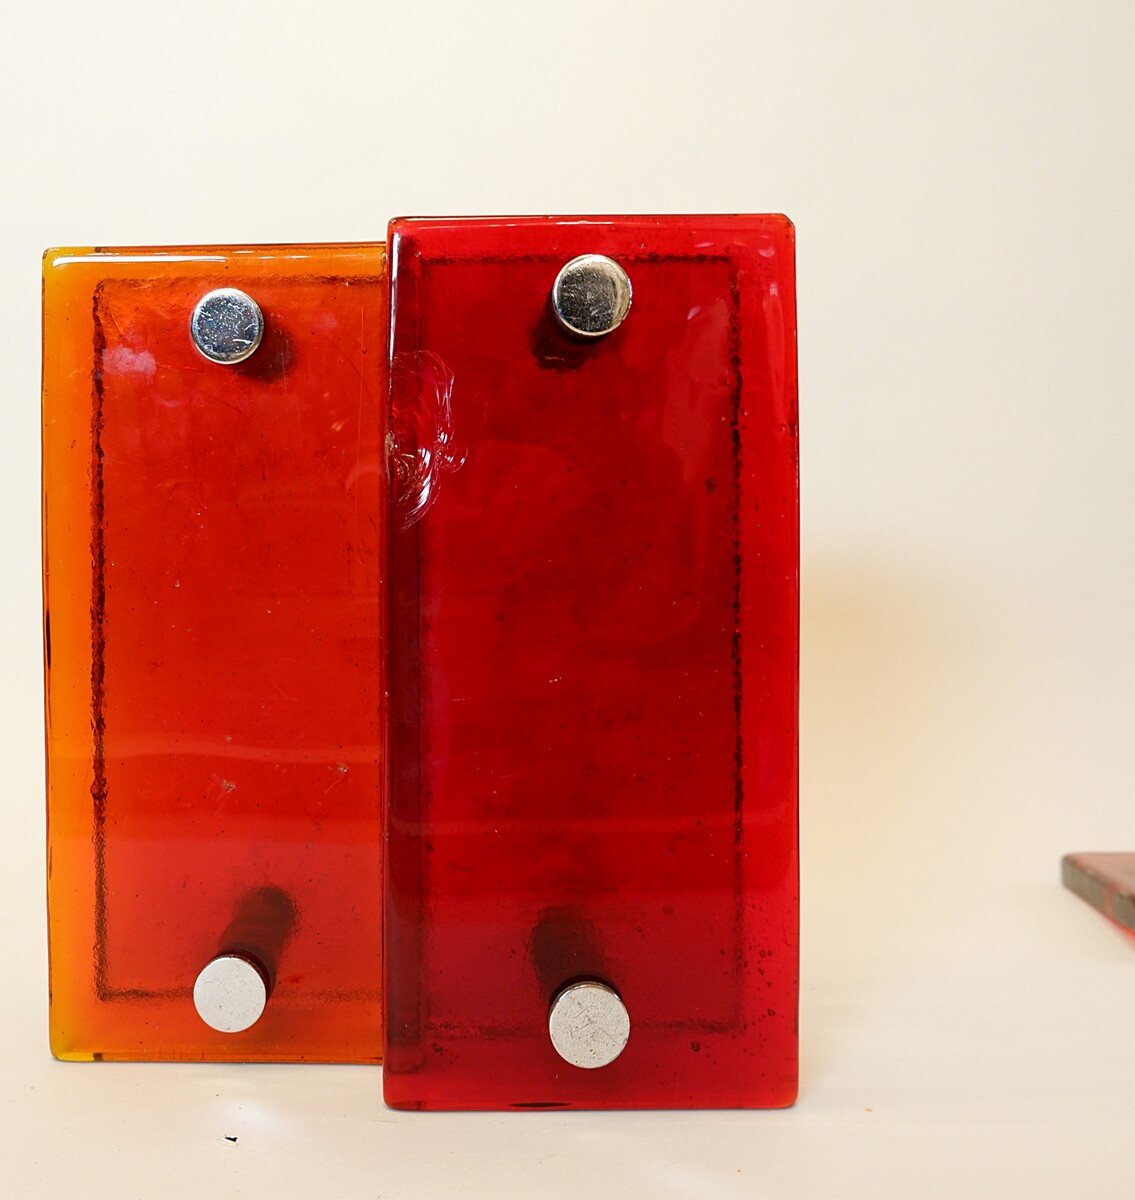 3 pairs of glass door handles - 2 orange / 1 red - 1960s 